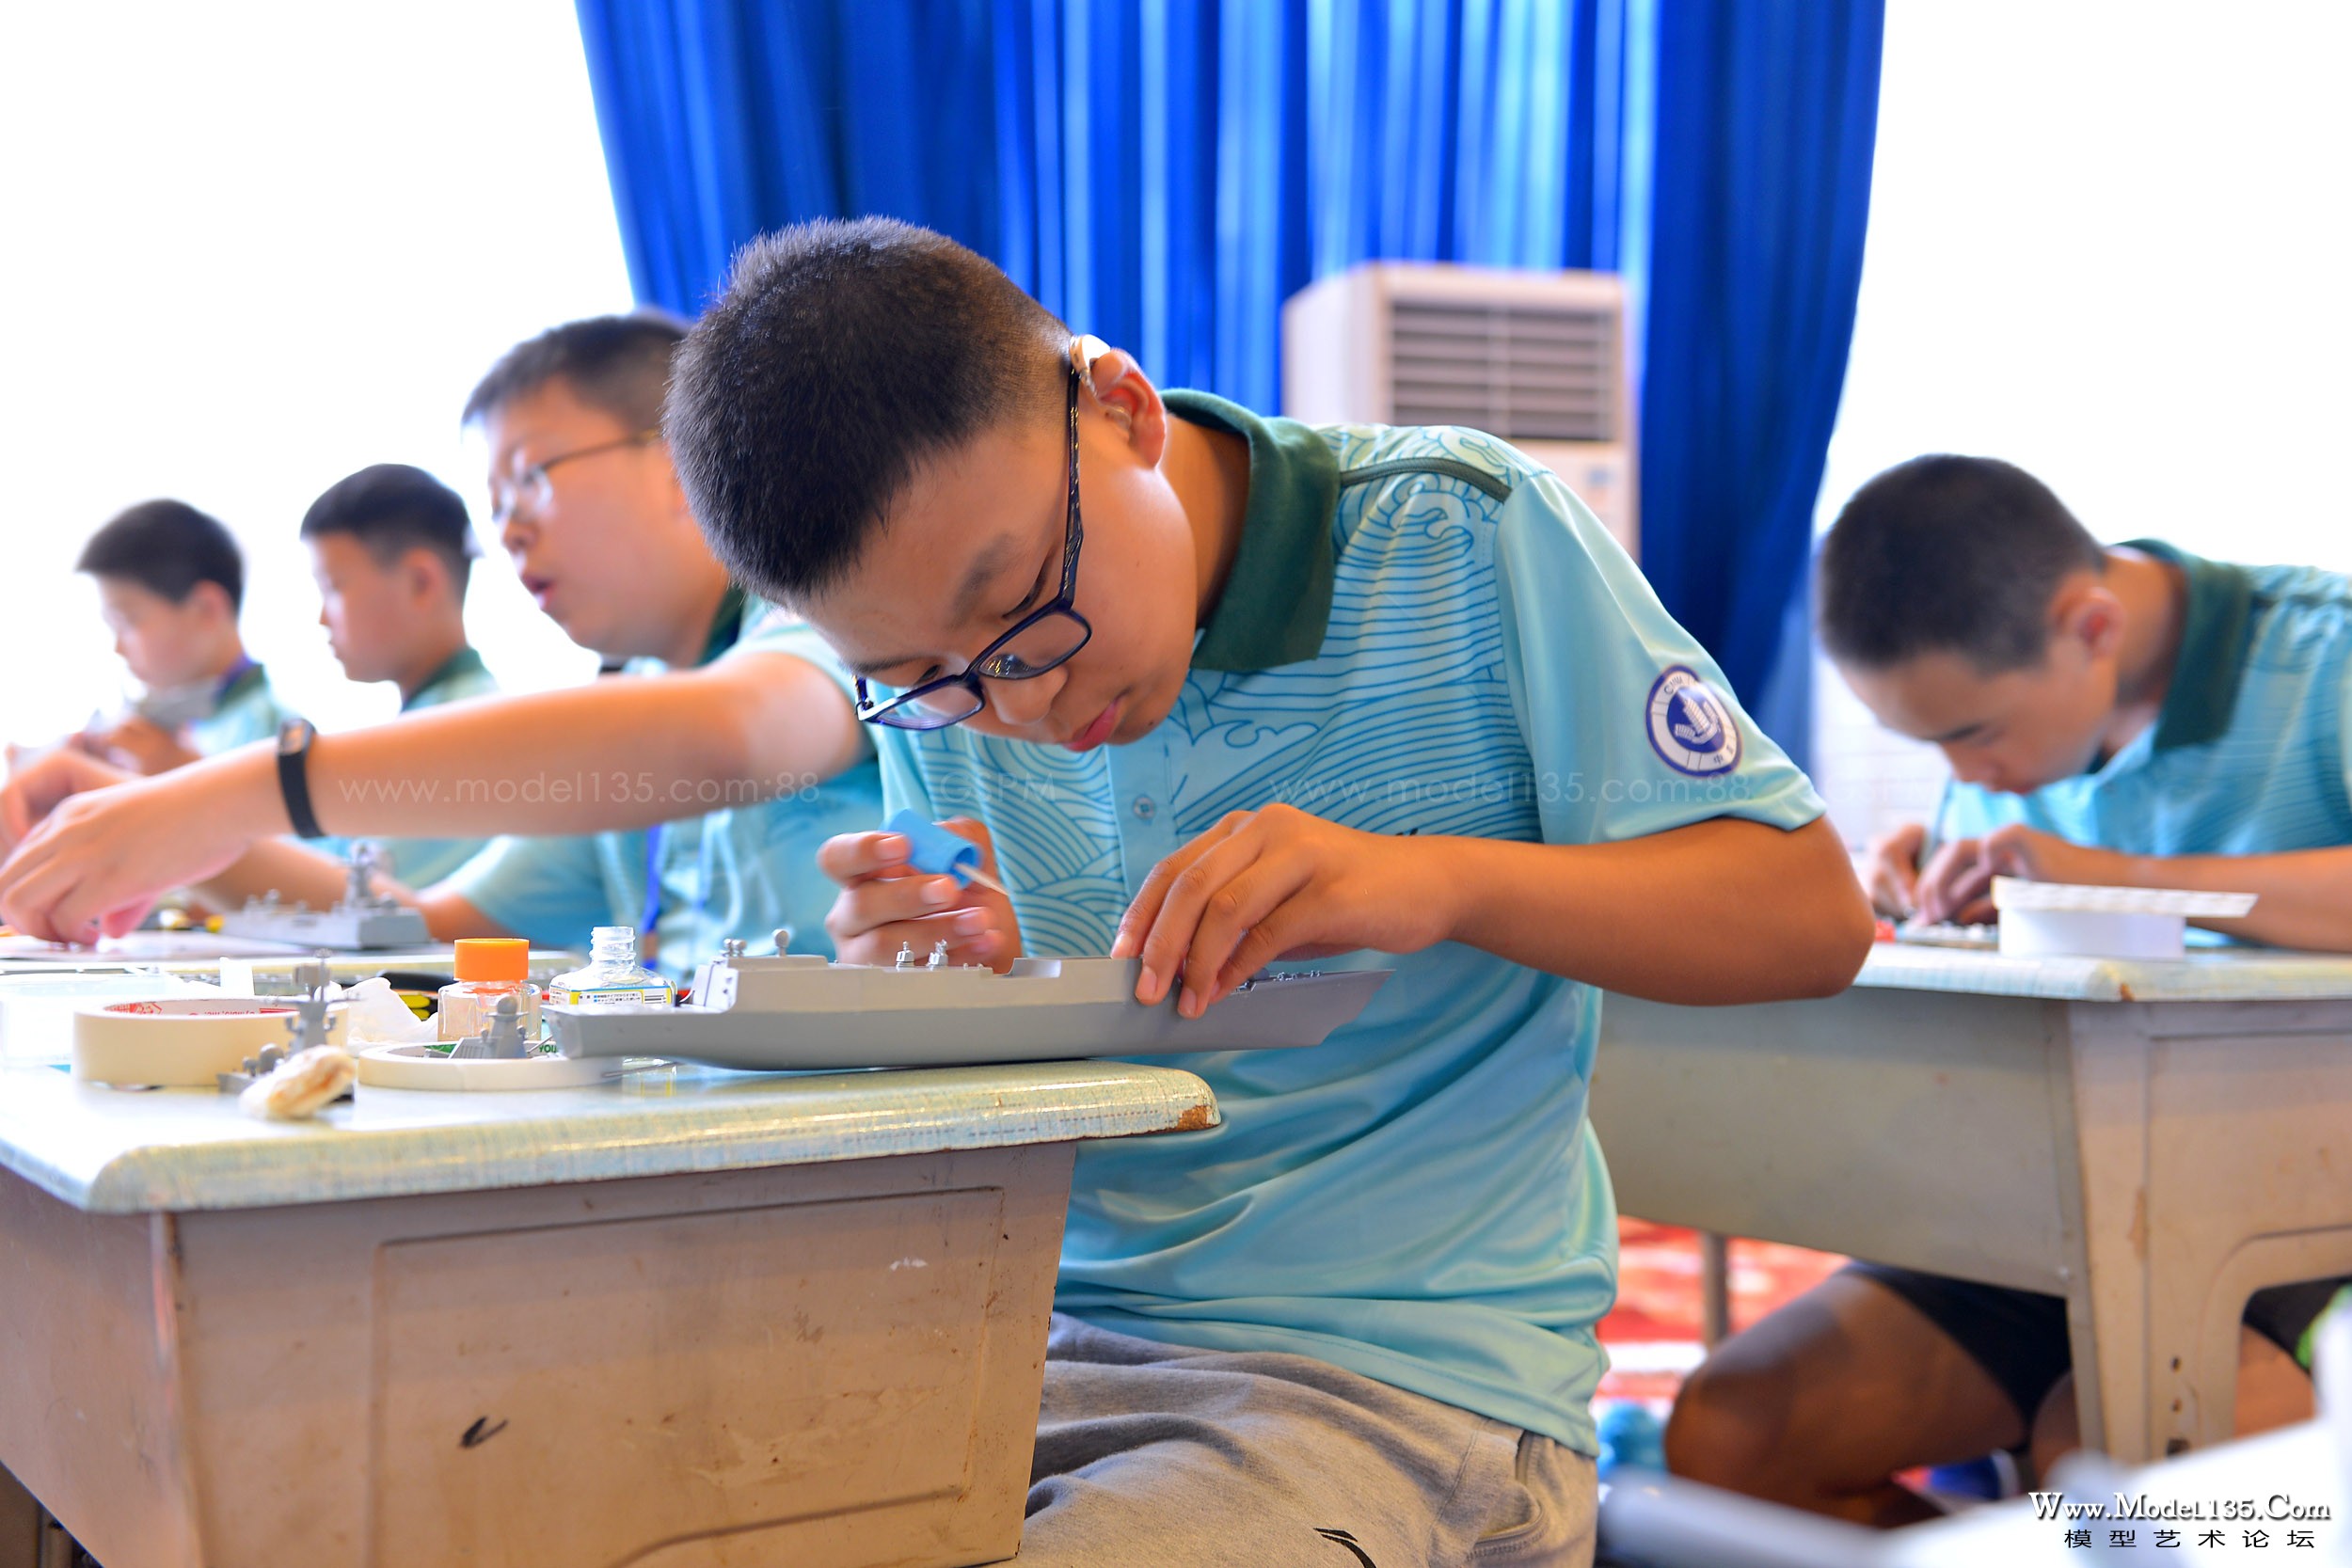 来自天津聋人学校的选手正在制作盐城号